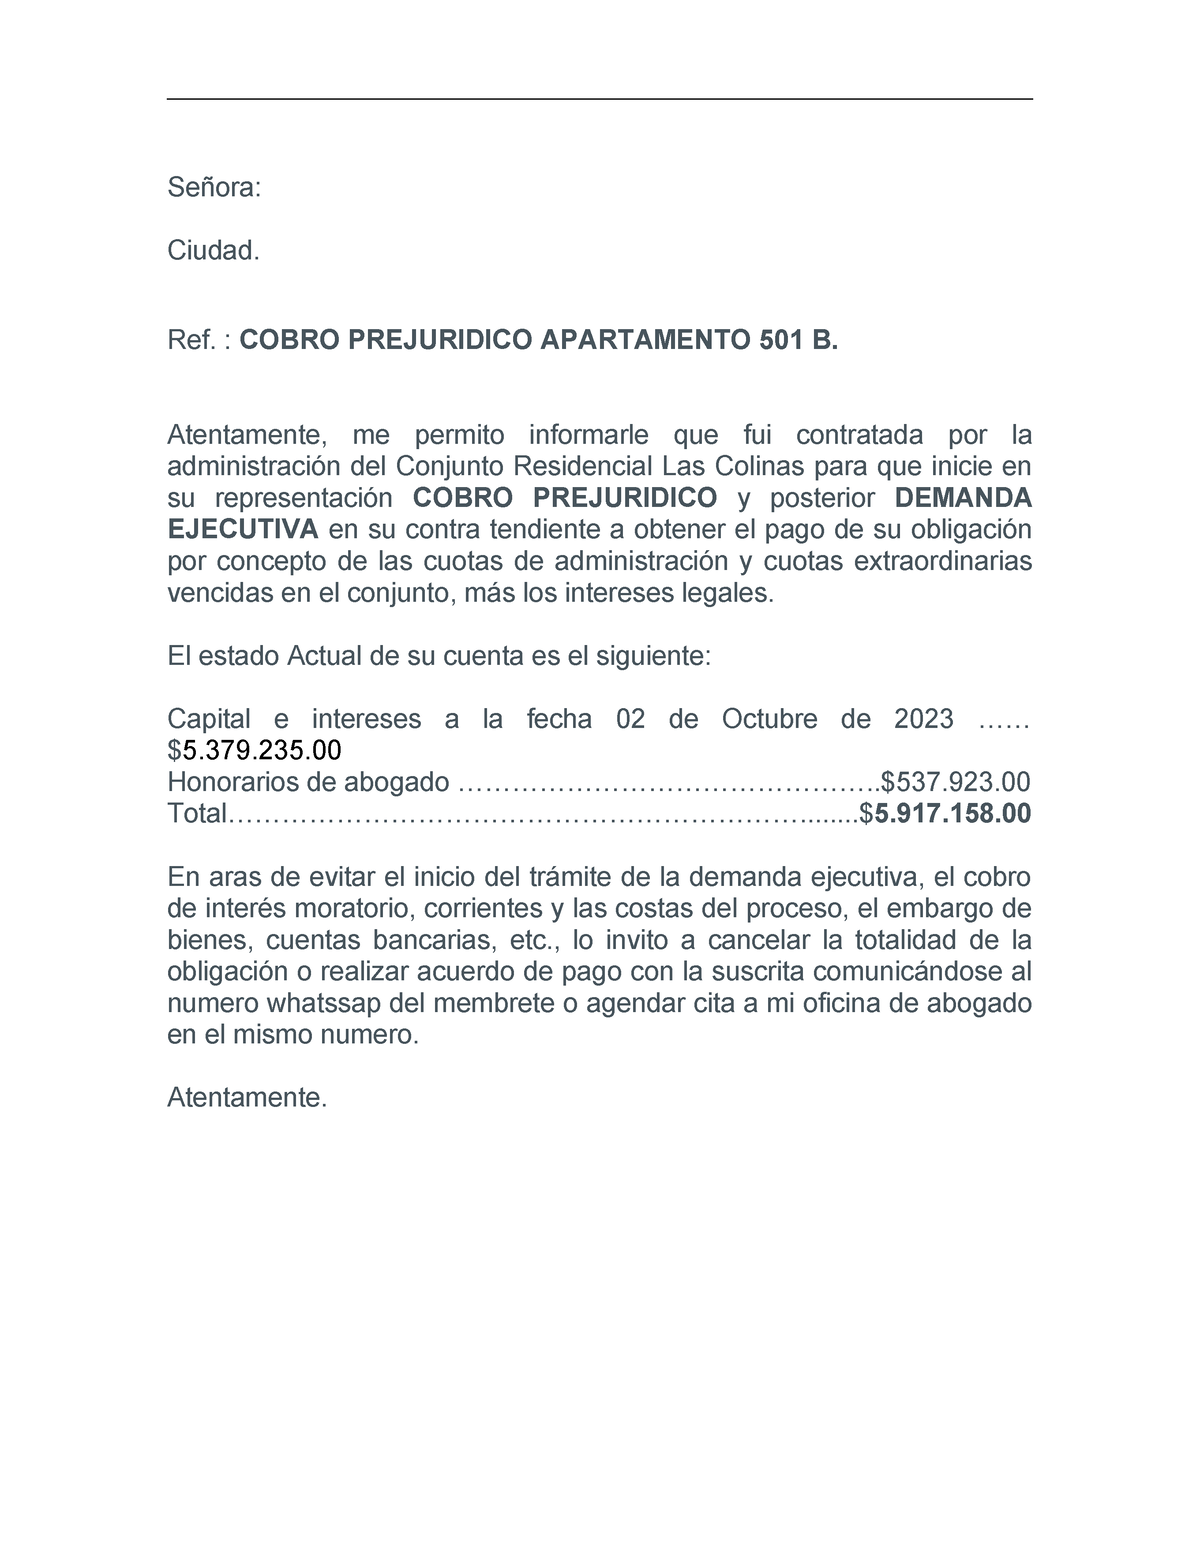 Modelo Carta De Cobro Prejurìdico Señora Ciudad Ref Cobro Prejuridico Apartamento 501 B 4619